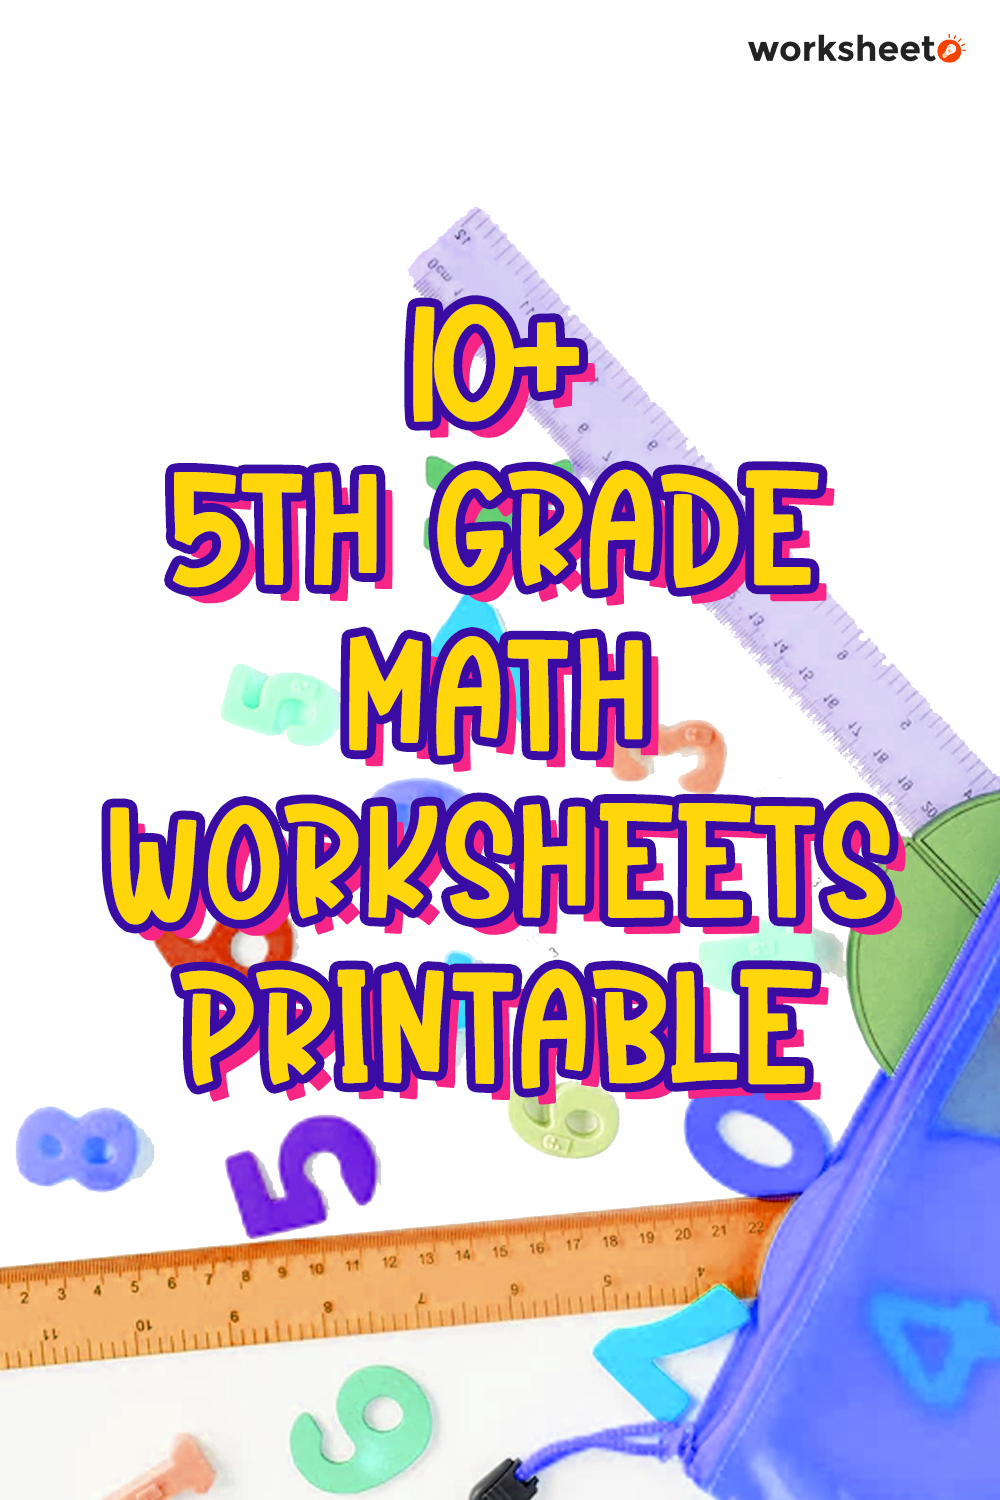 11 5th Grade Math Worksheets Printable Free PDF At Worksheeto